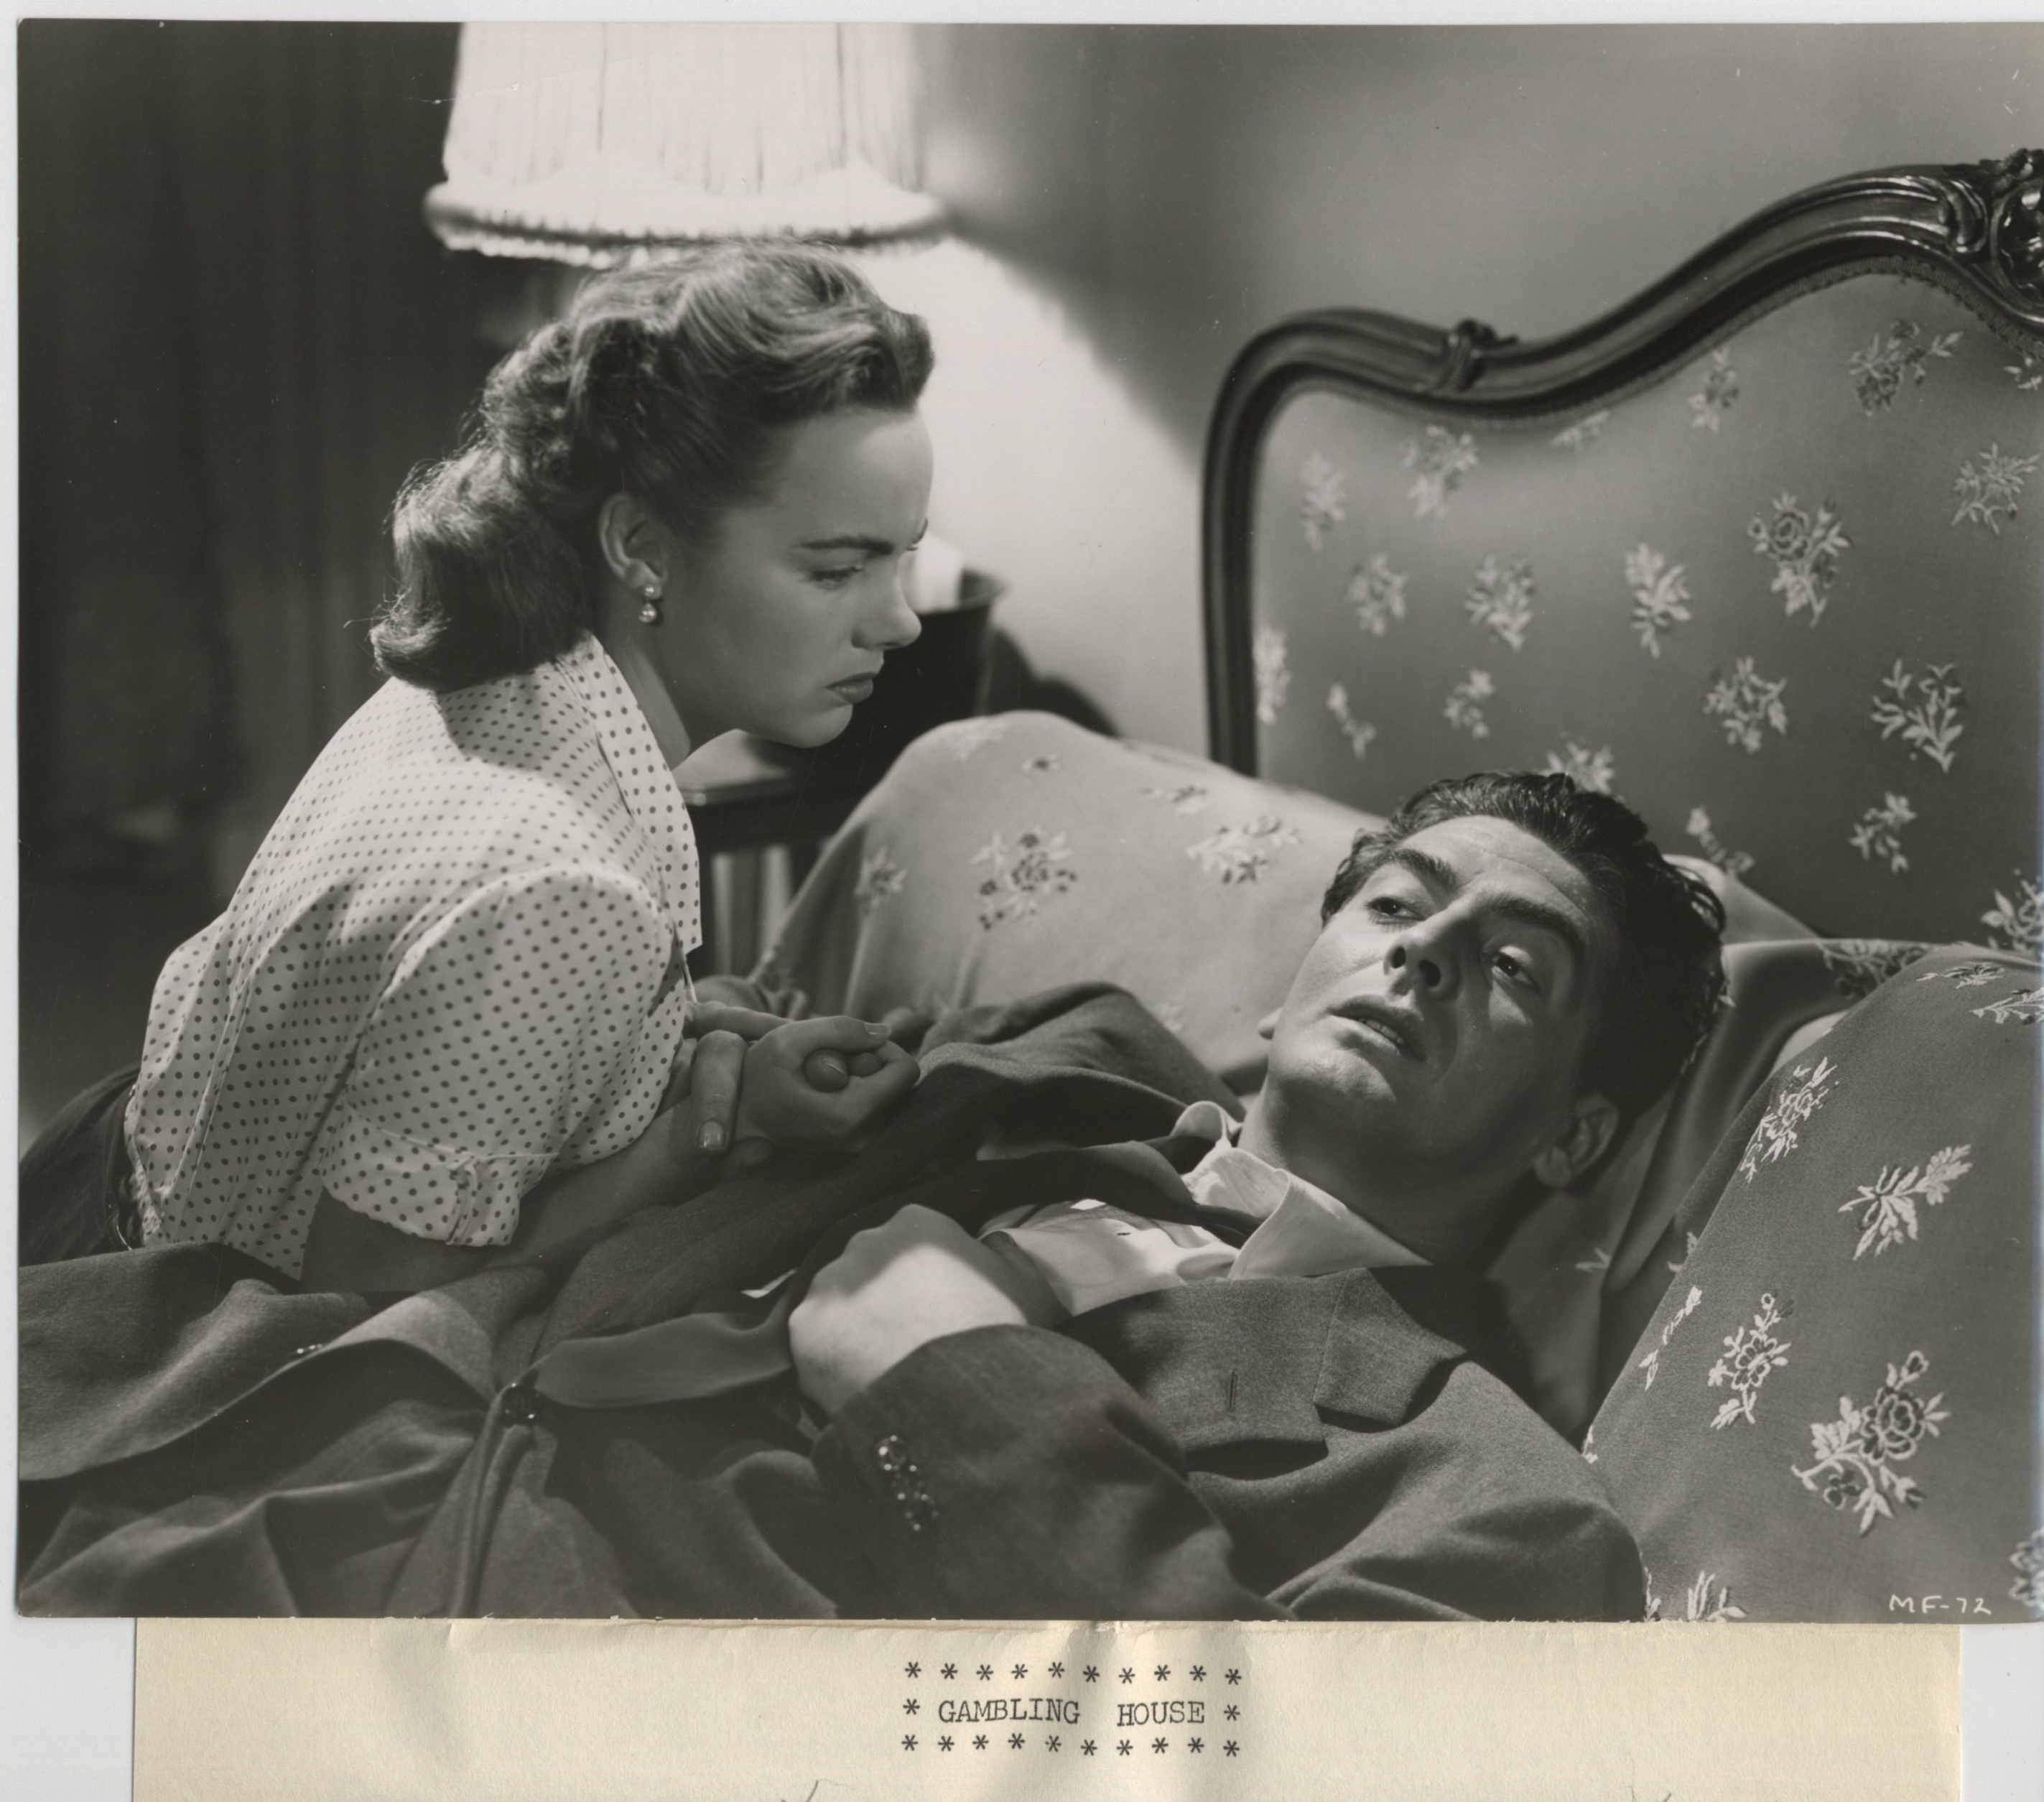 Gambling House (1950) Screenshot 3